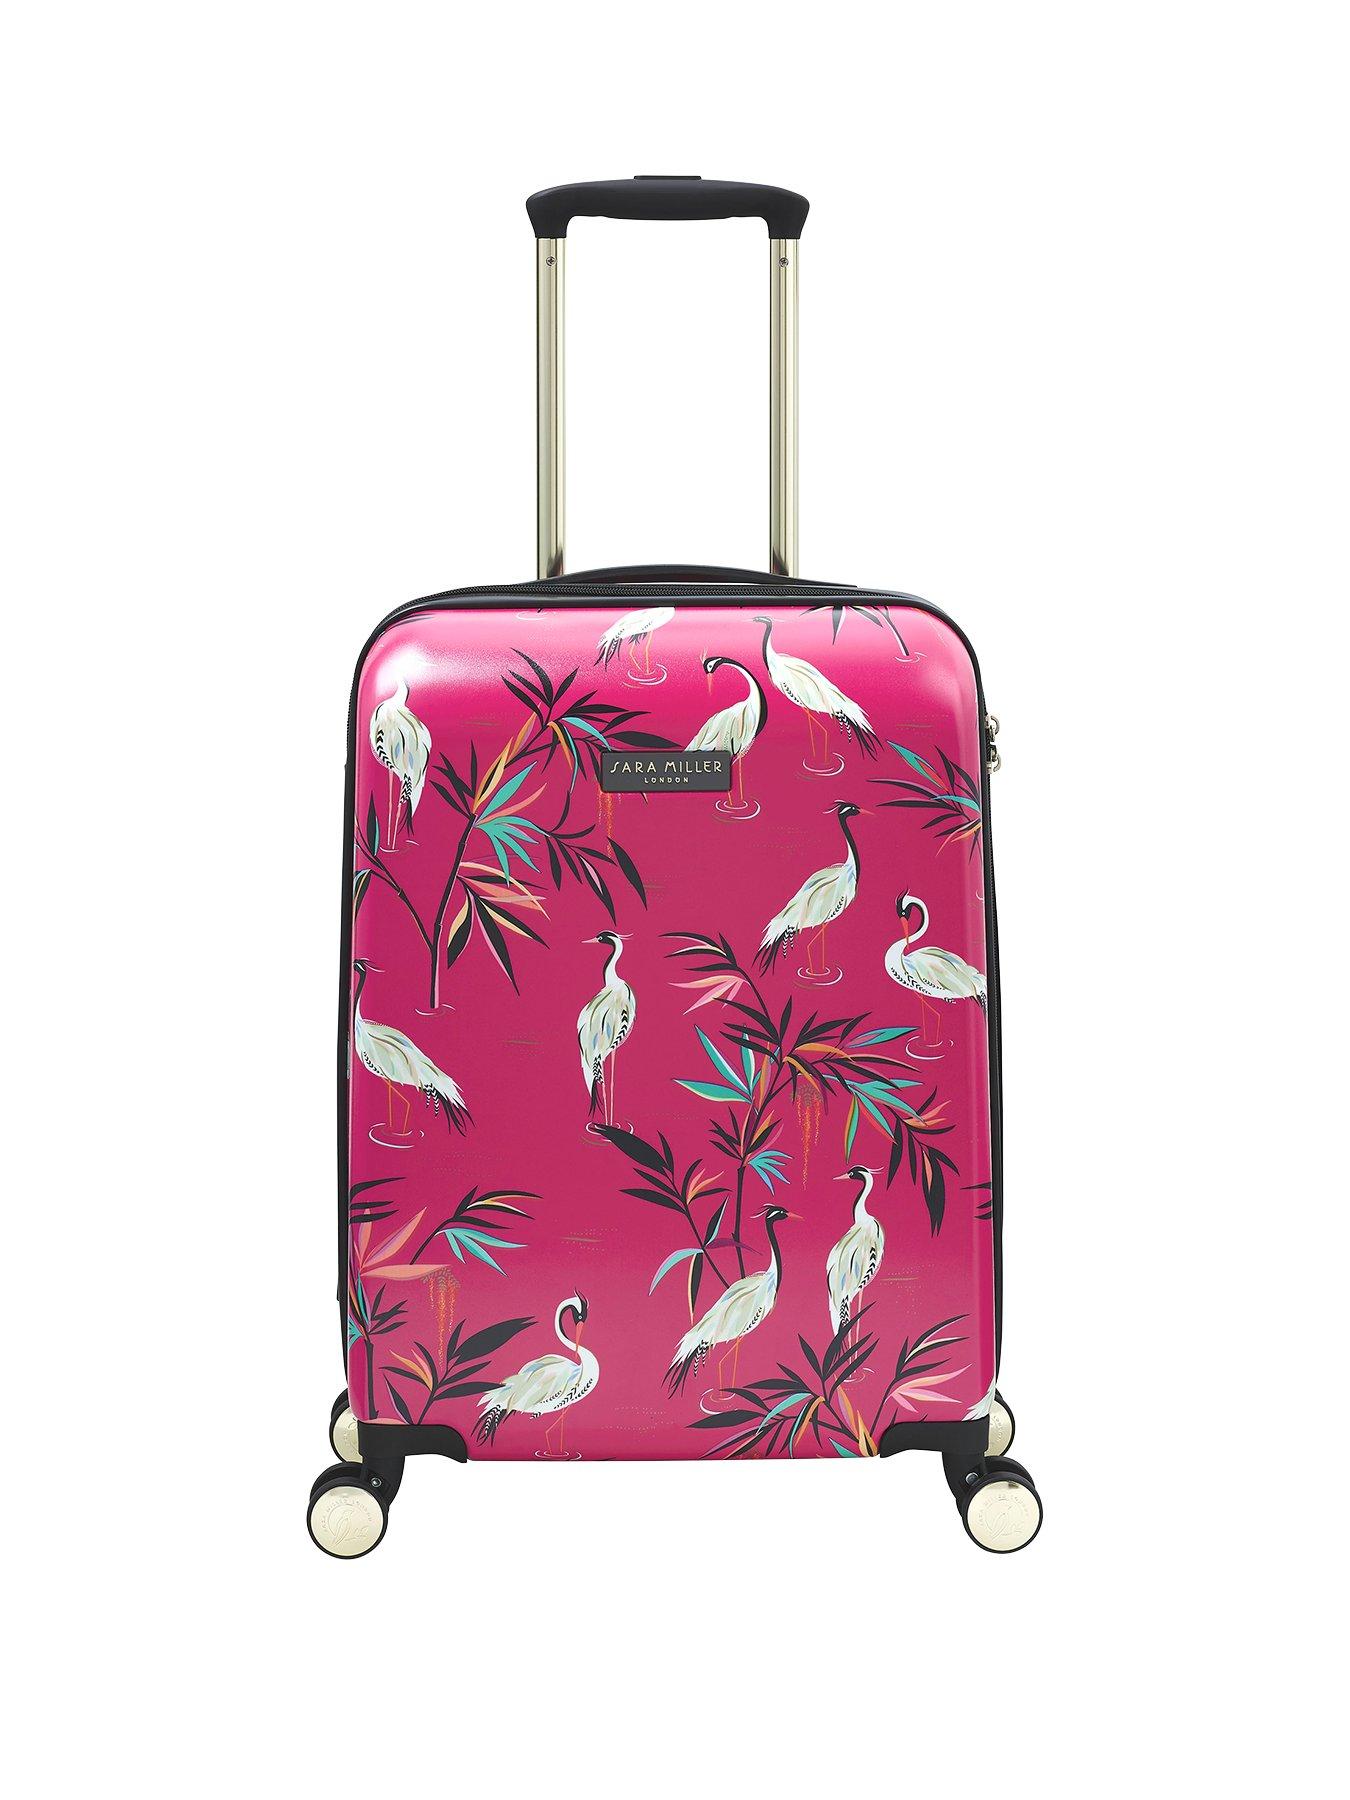 Sara Miller Small Pink Heron 4 Wheel Trolley Suitcase